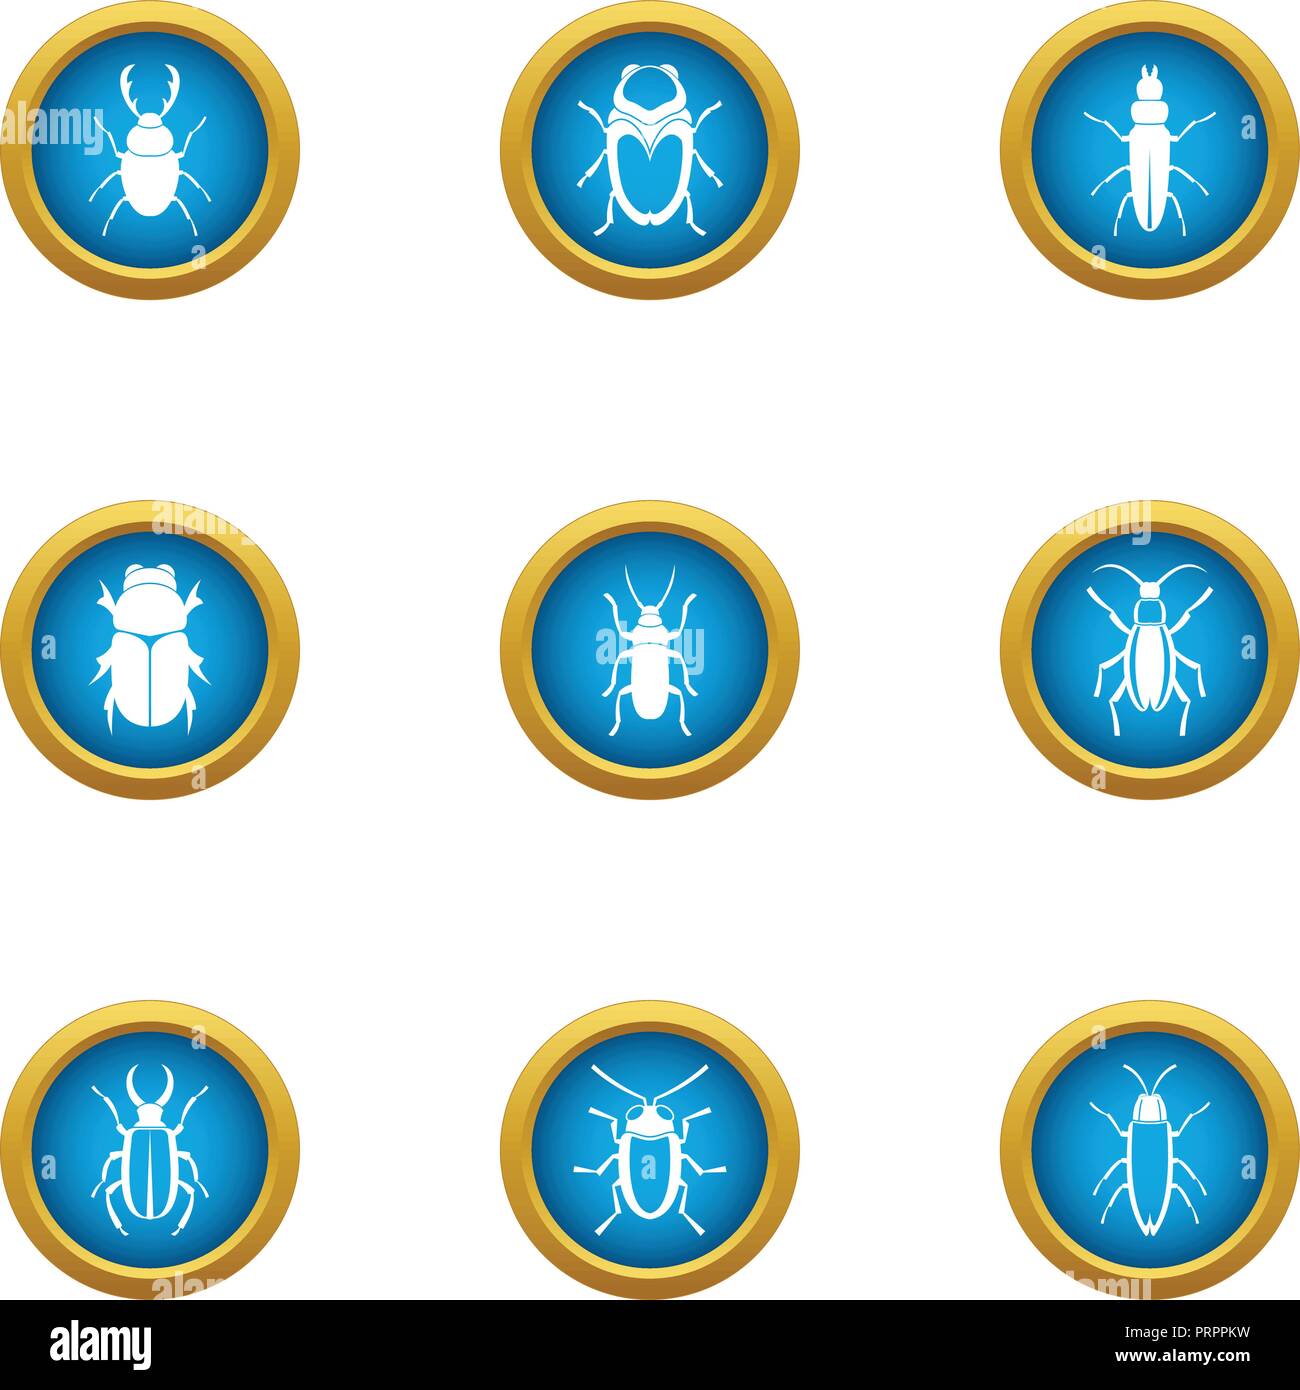 Useful beetle icons set, flat style Stock Vector